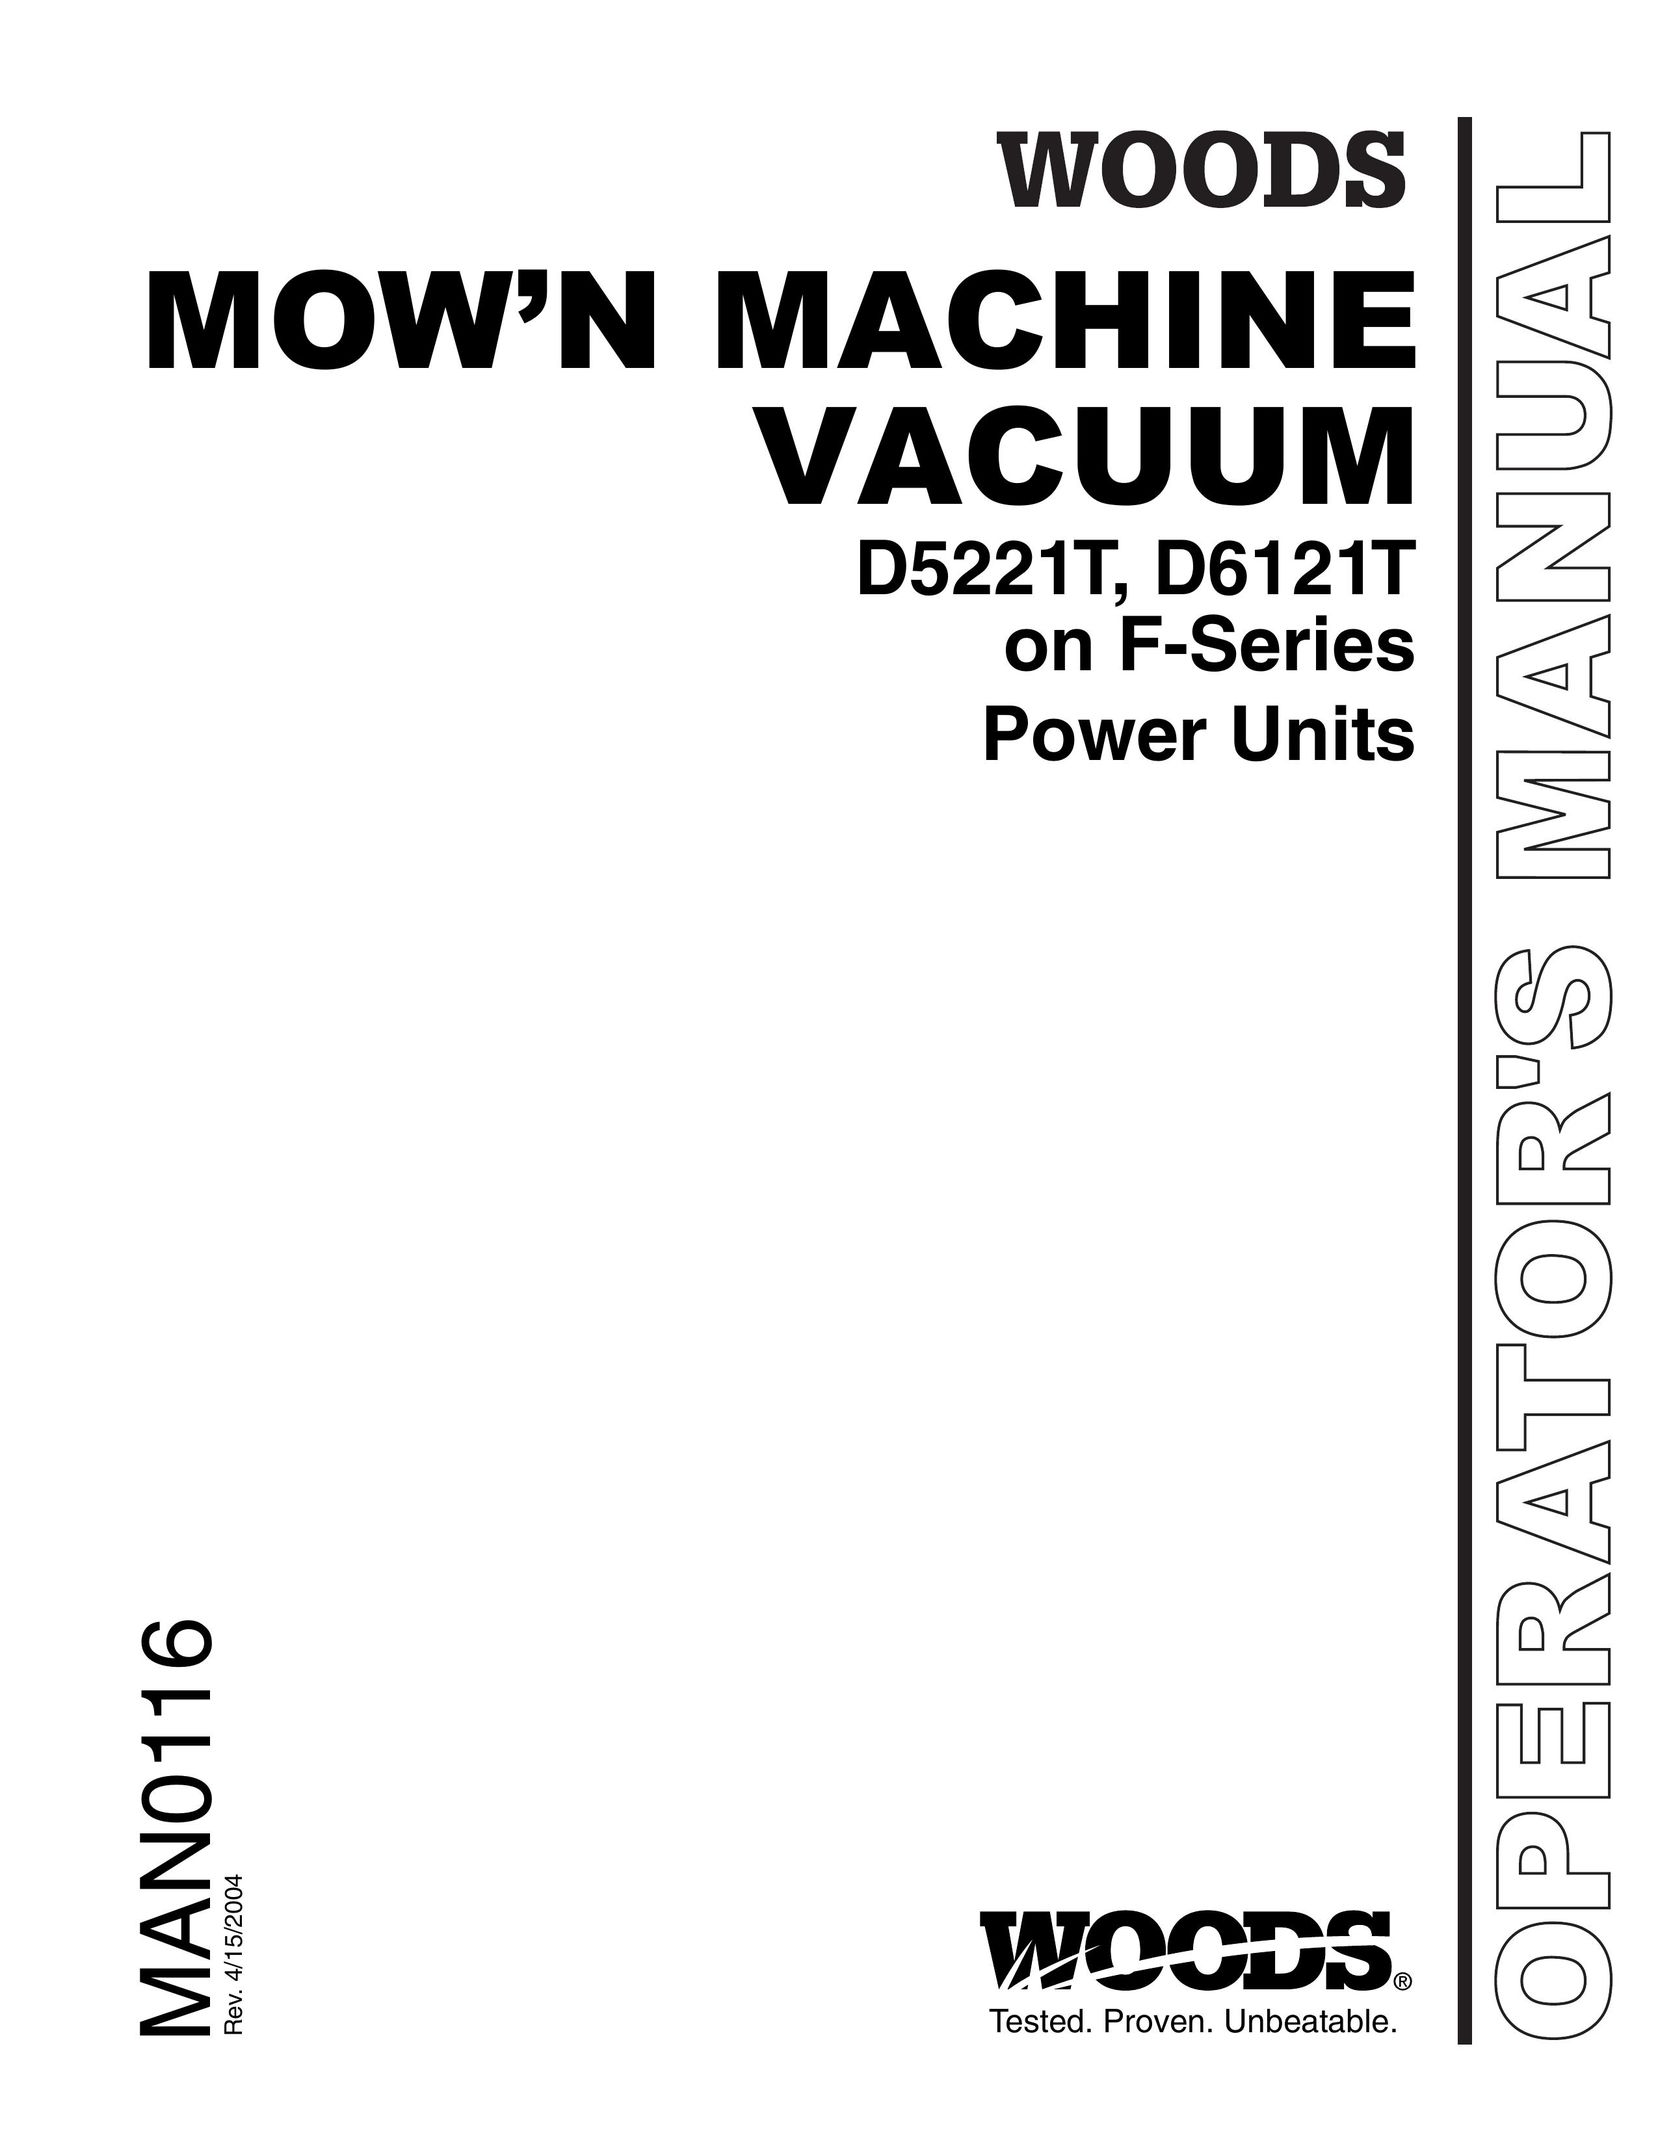 Woods Equipment D6121T Vacuum Cleaner User Manual